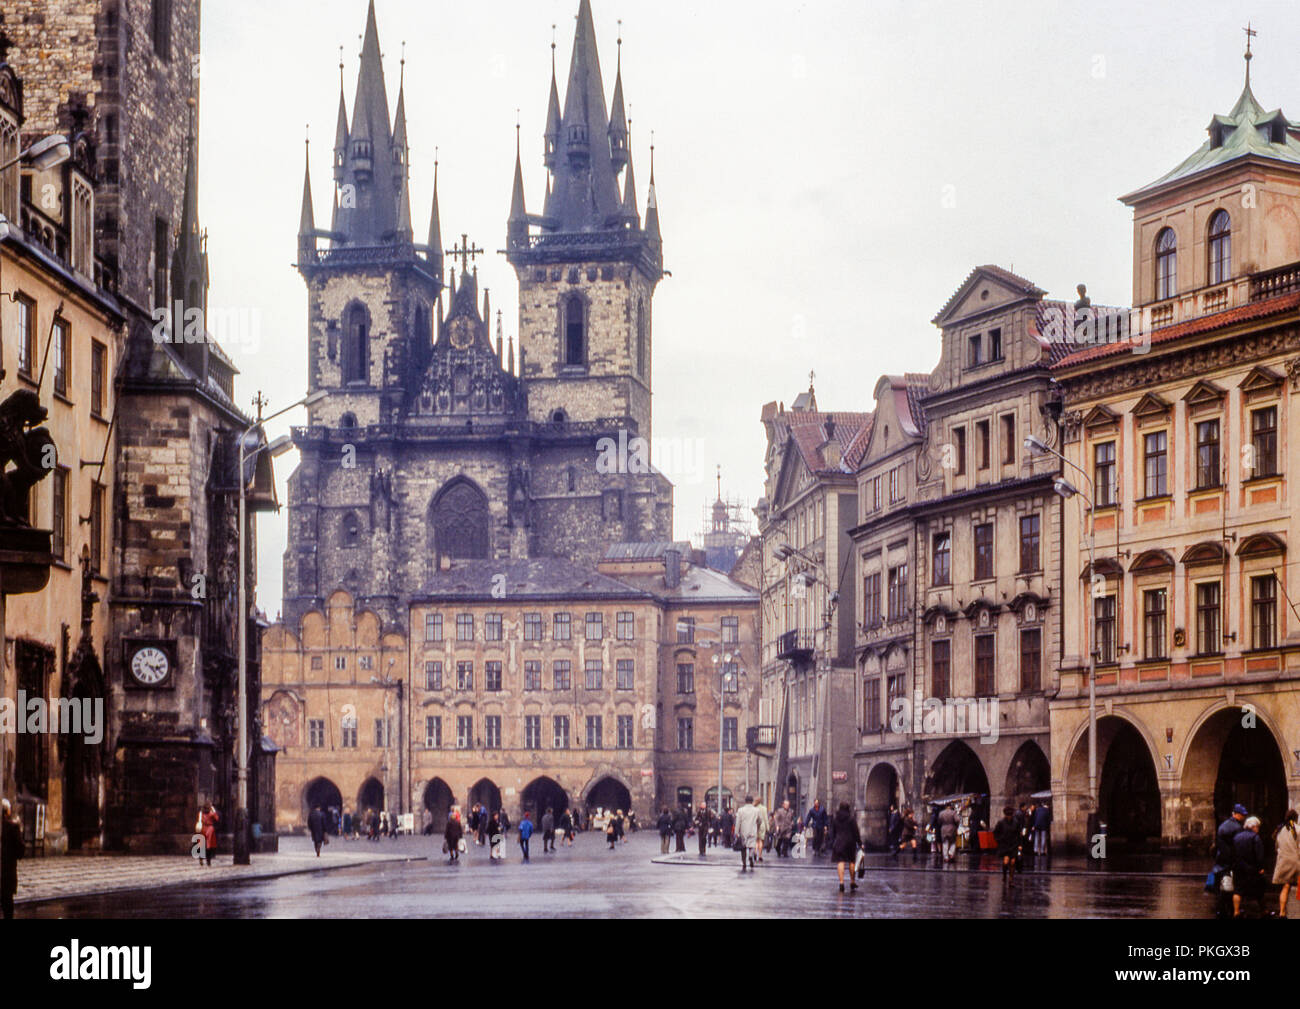 Iglesia de Nuestra Señora en frente del Týn y el Antiguo Ayuntamiento, en la Plaza de la Ciudad Vieja de Praga, adoptada en abril de 1973 en la antigua Checoslovaquia. Imagen de archivo original. Foto de stock